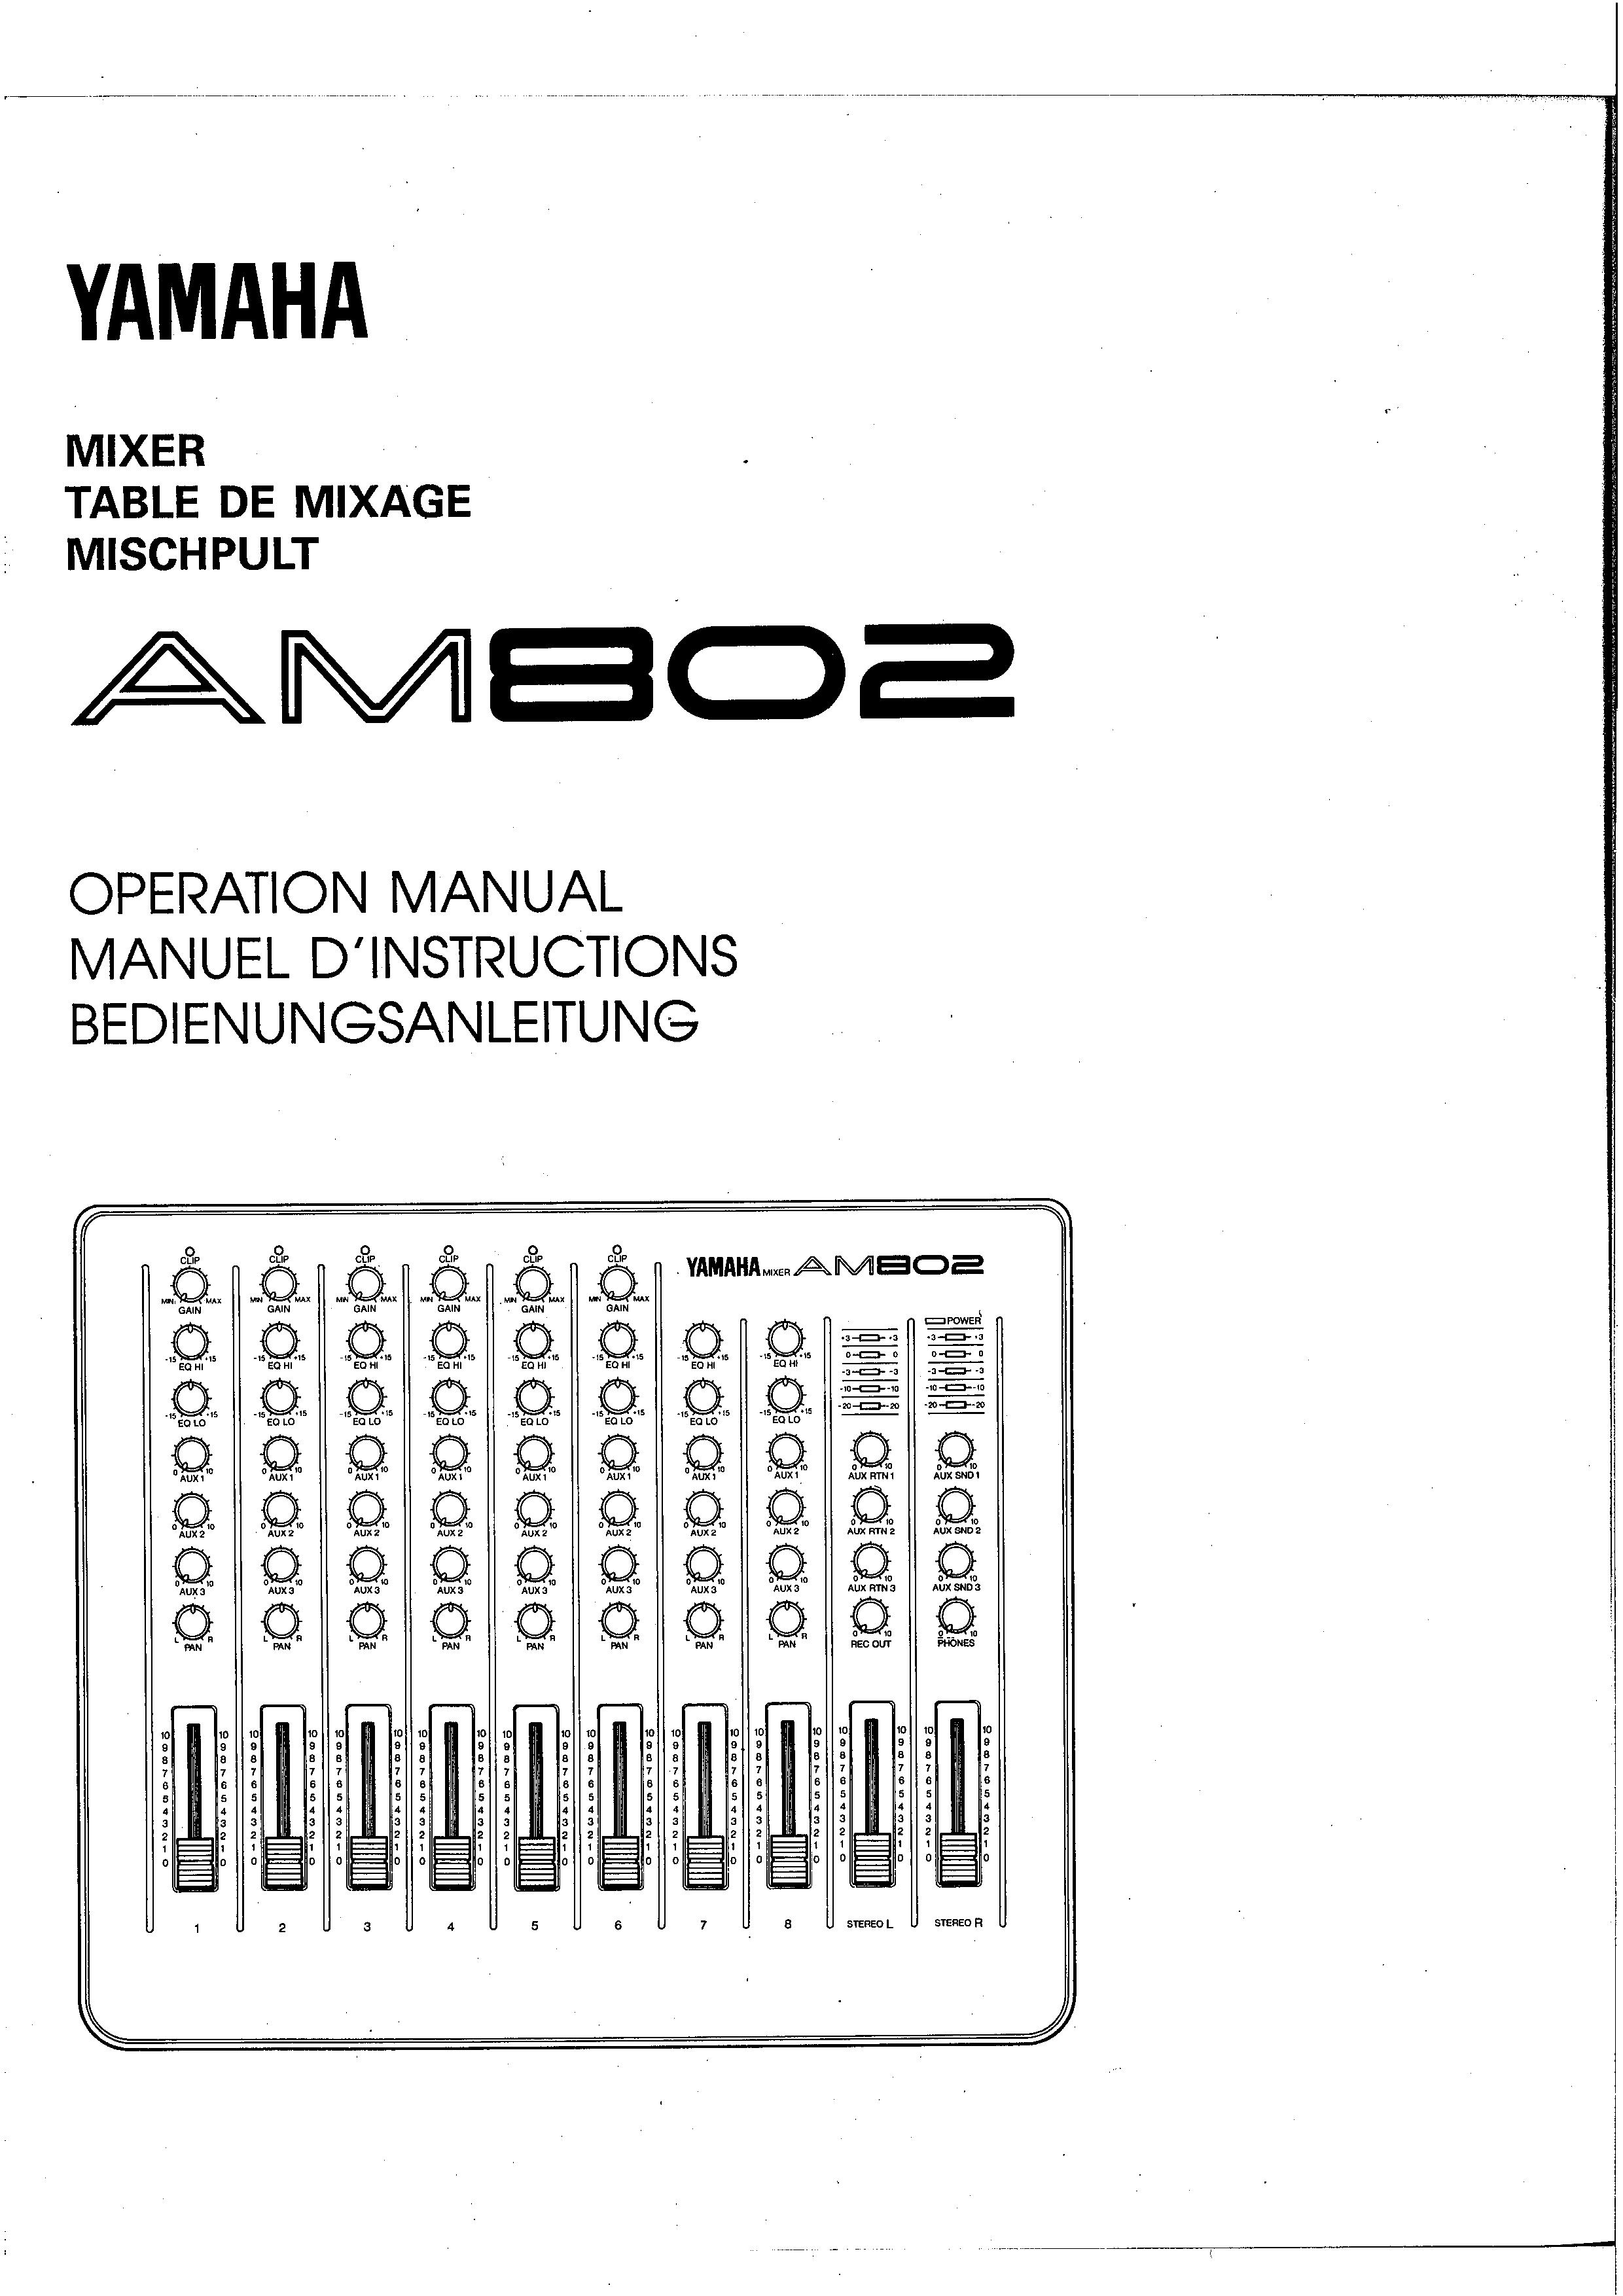 Yamaha AM802 Music Mixer User Manual